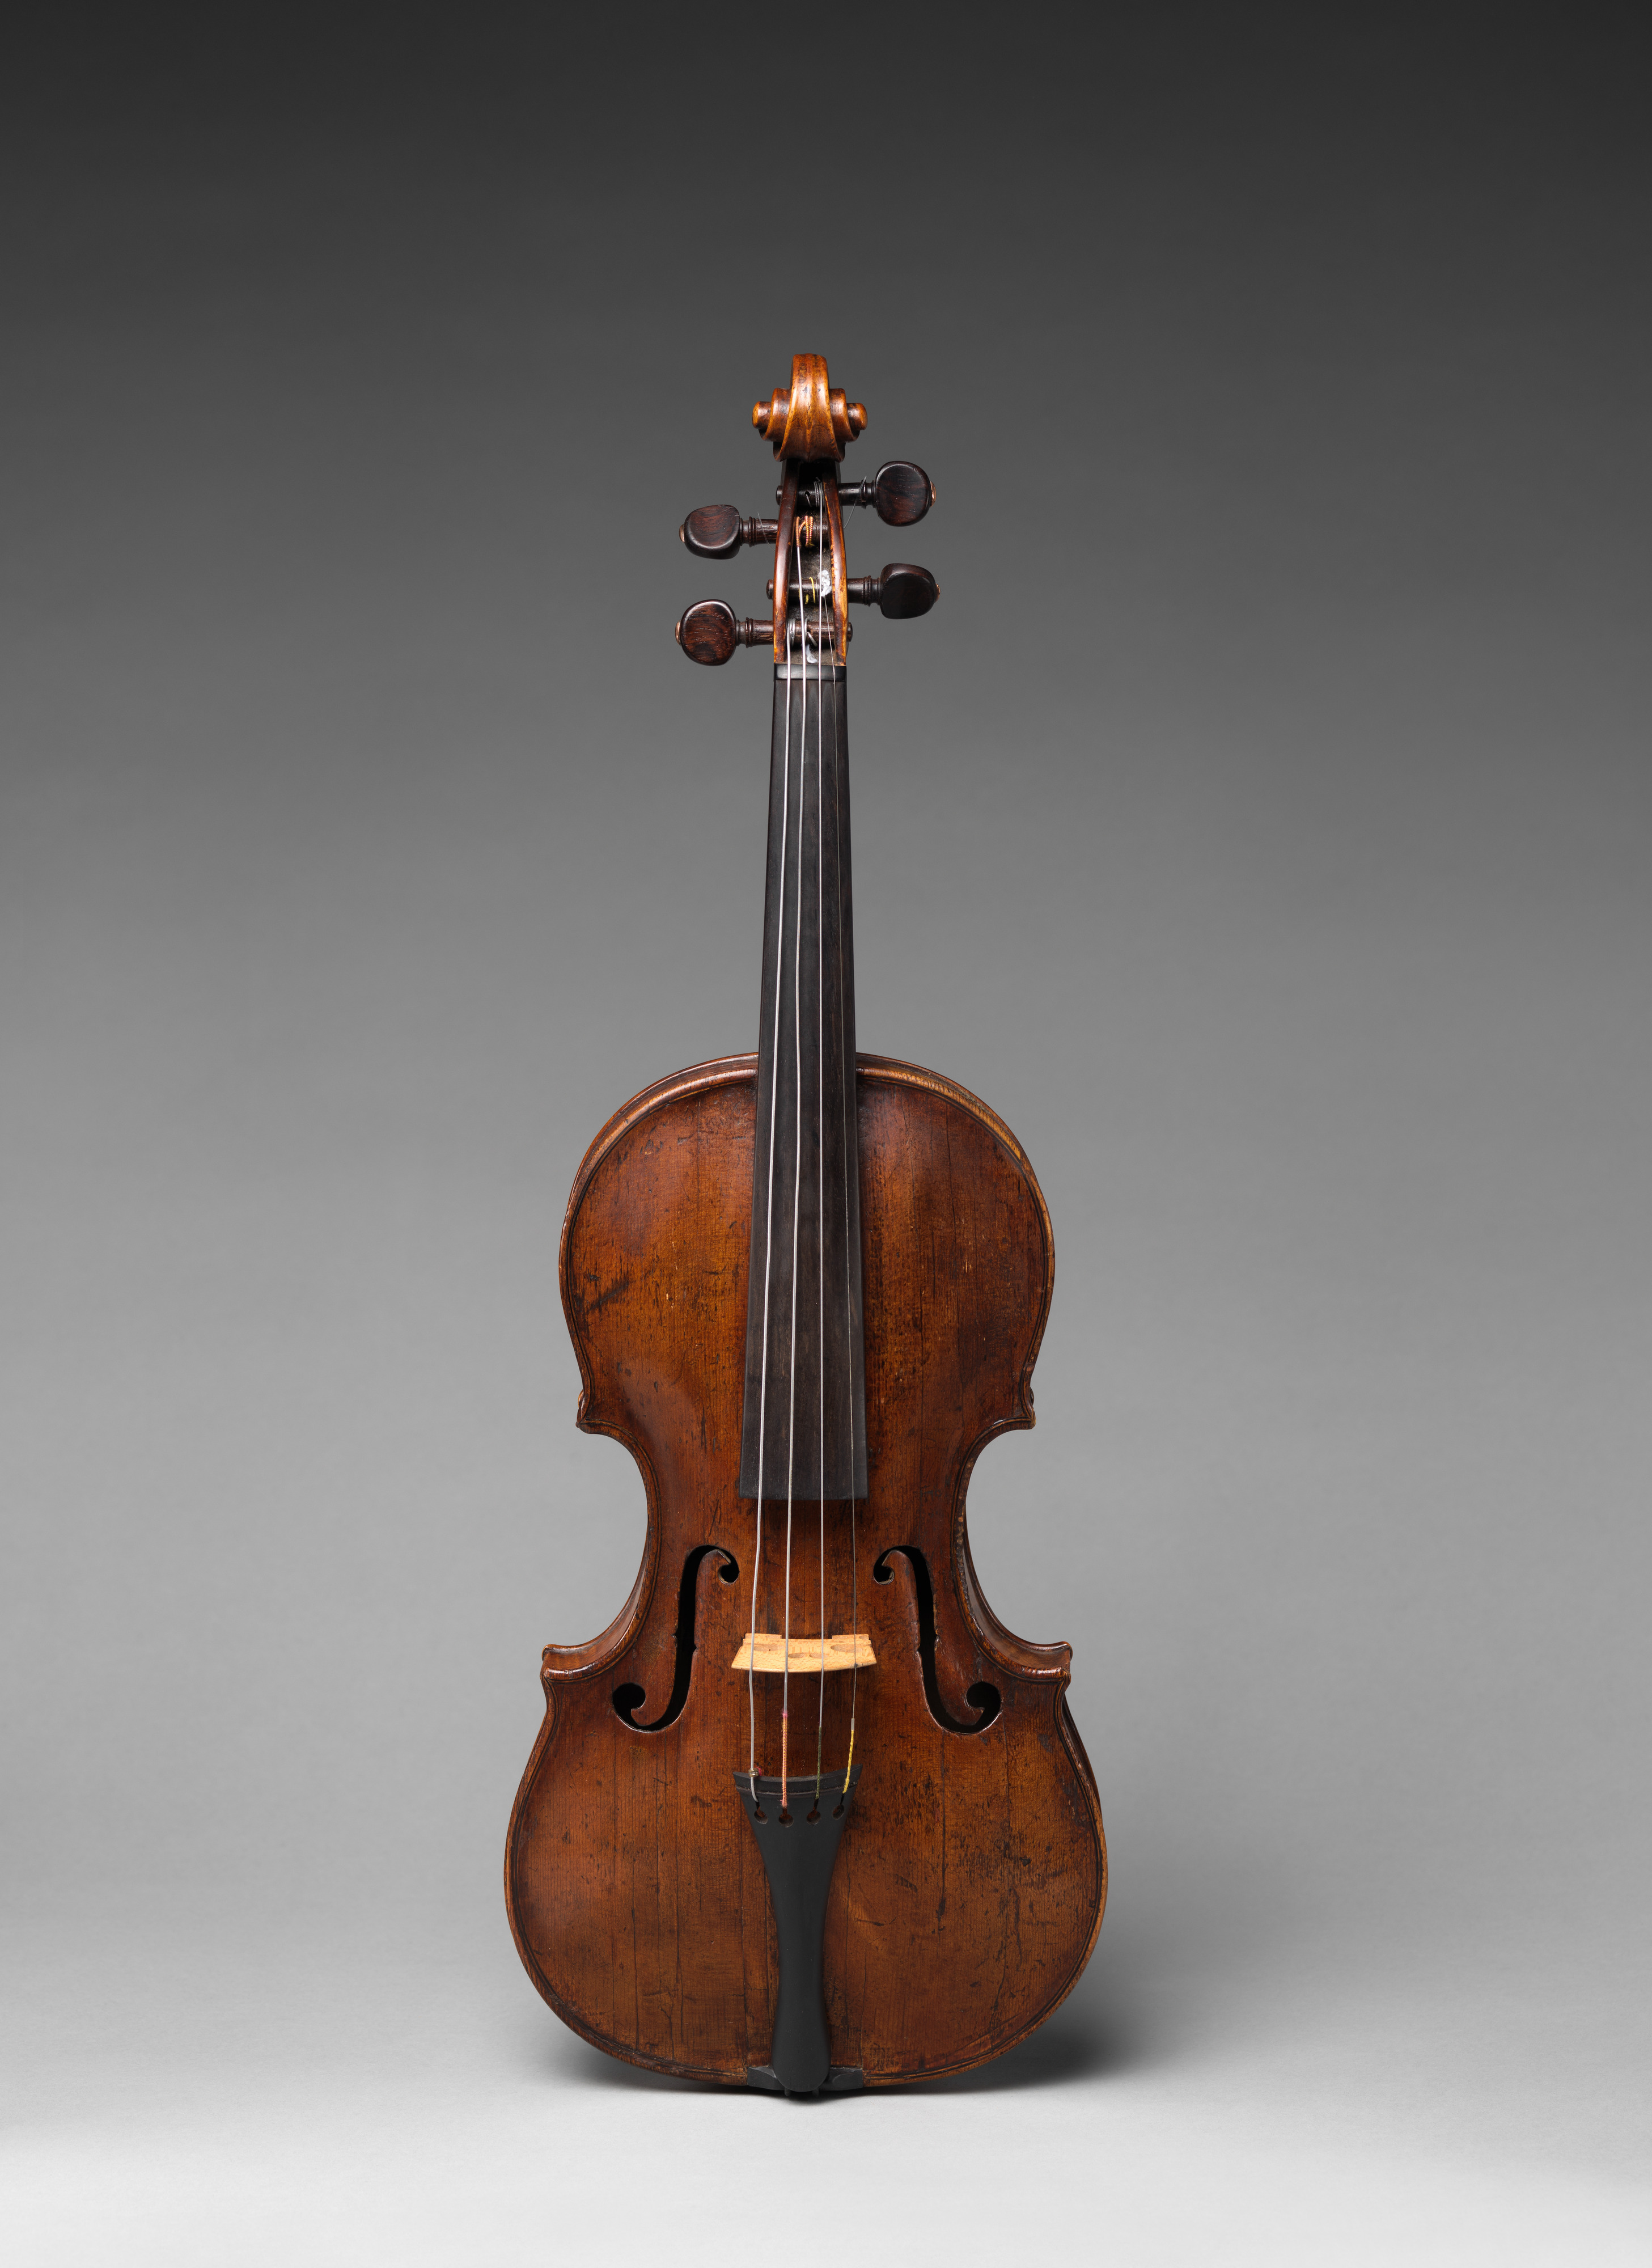 Et centralt værktøj, der spiller en vigtig rolle Ledelse Overskyet labeled Lorenzo Carcassi | Violin | Italian, Florentine | The Metropolitan  Museum of Art